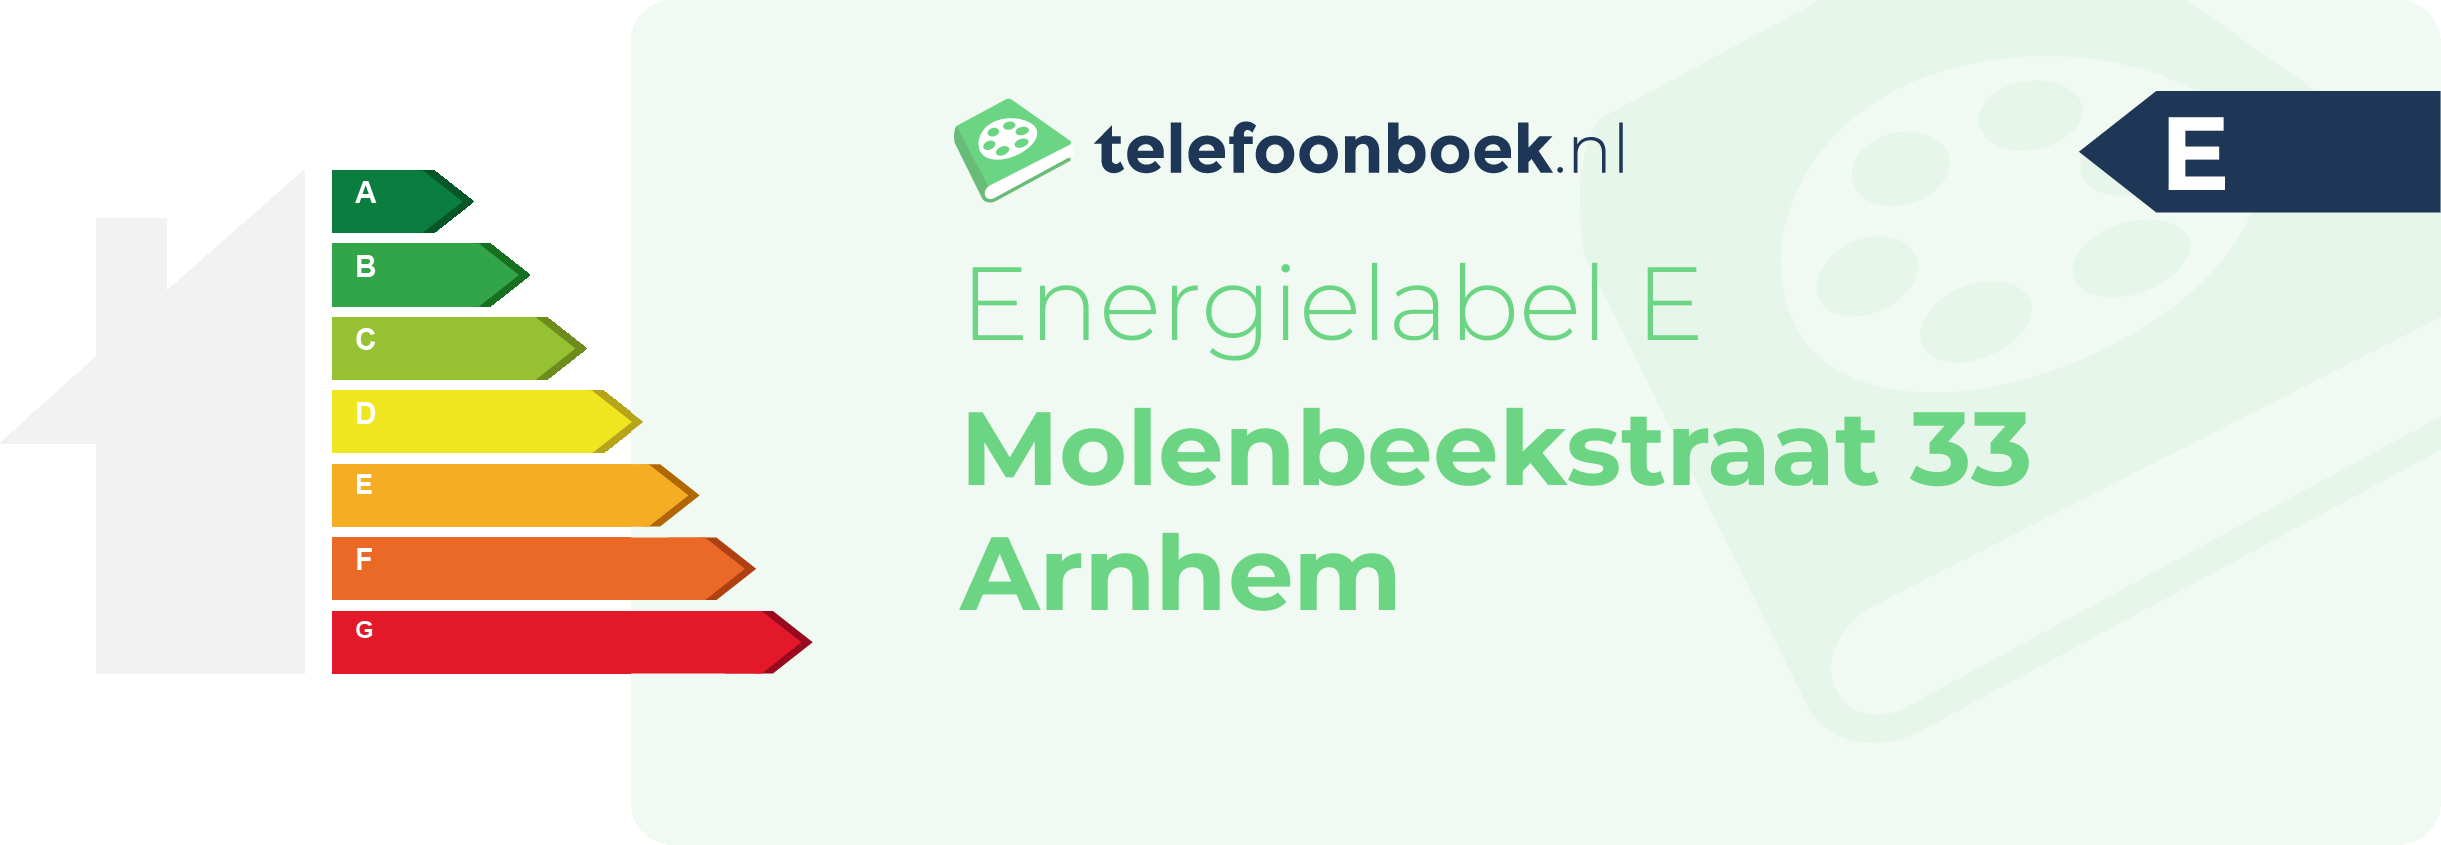 Energielabel Molenbeekstraat 33 Arnhem